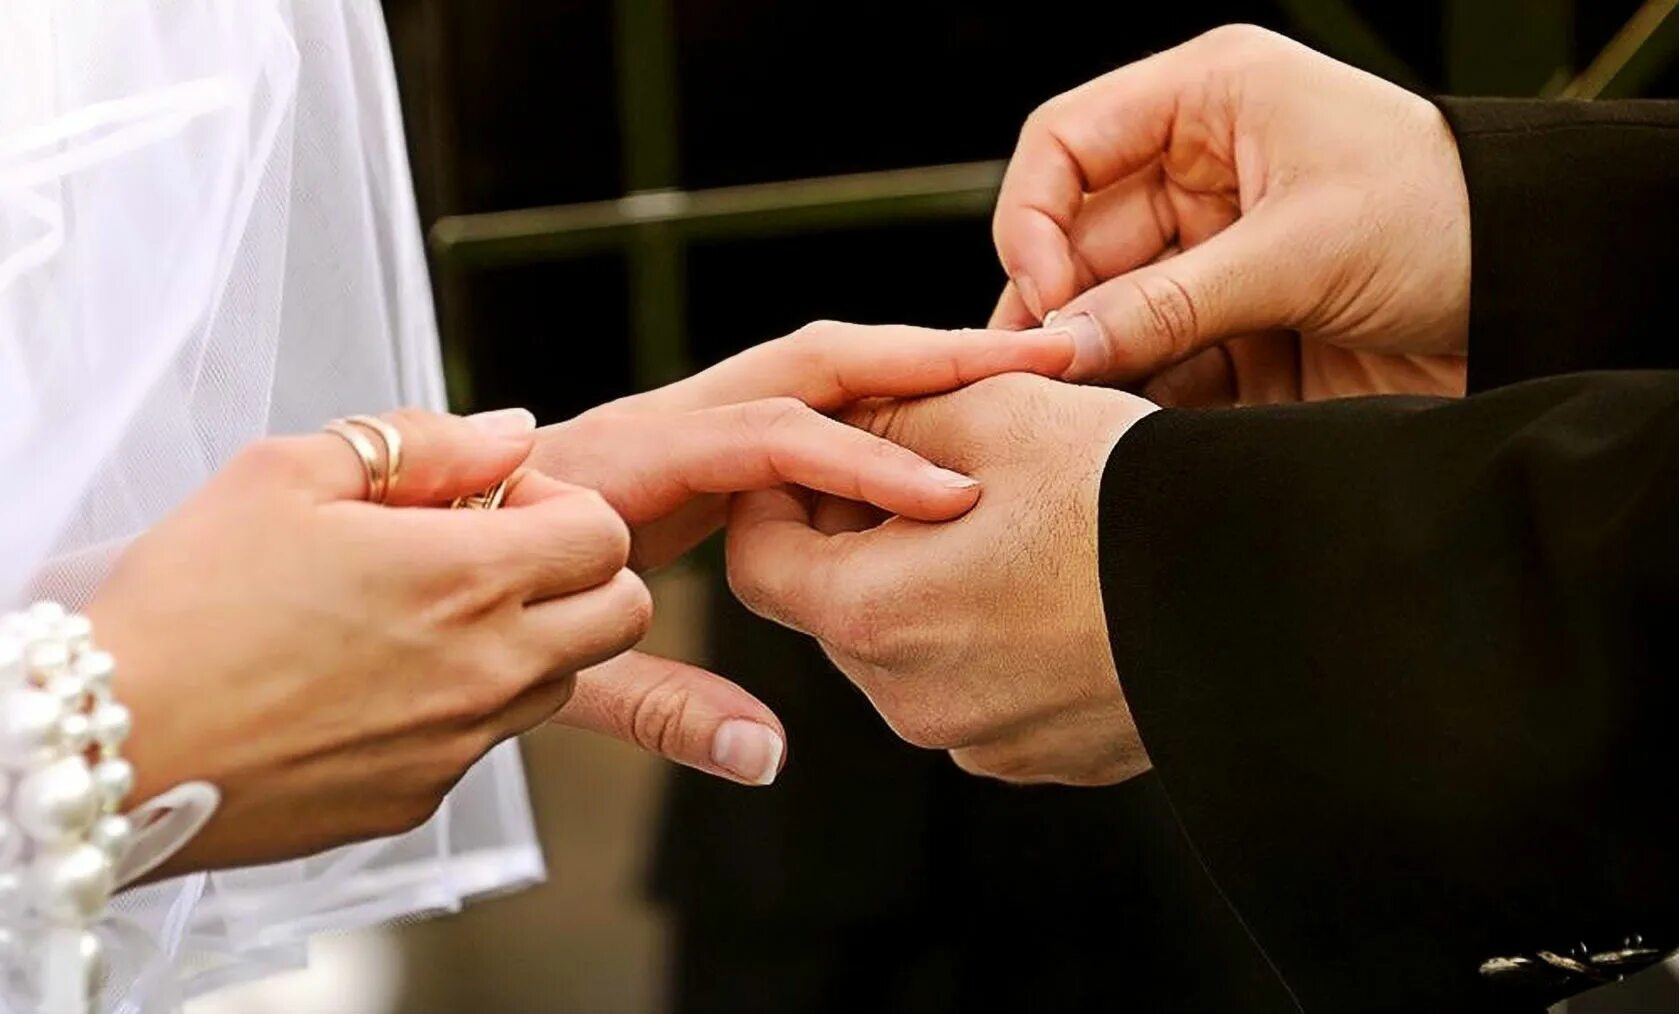 Кольцо замужества. Свадебные кольца на руках. Жених одевает кольцо невесте. Свадьба руки с кольцами. Свадебные кольца в ЗАГСЕ.